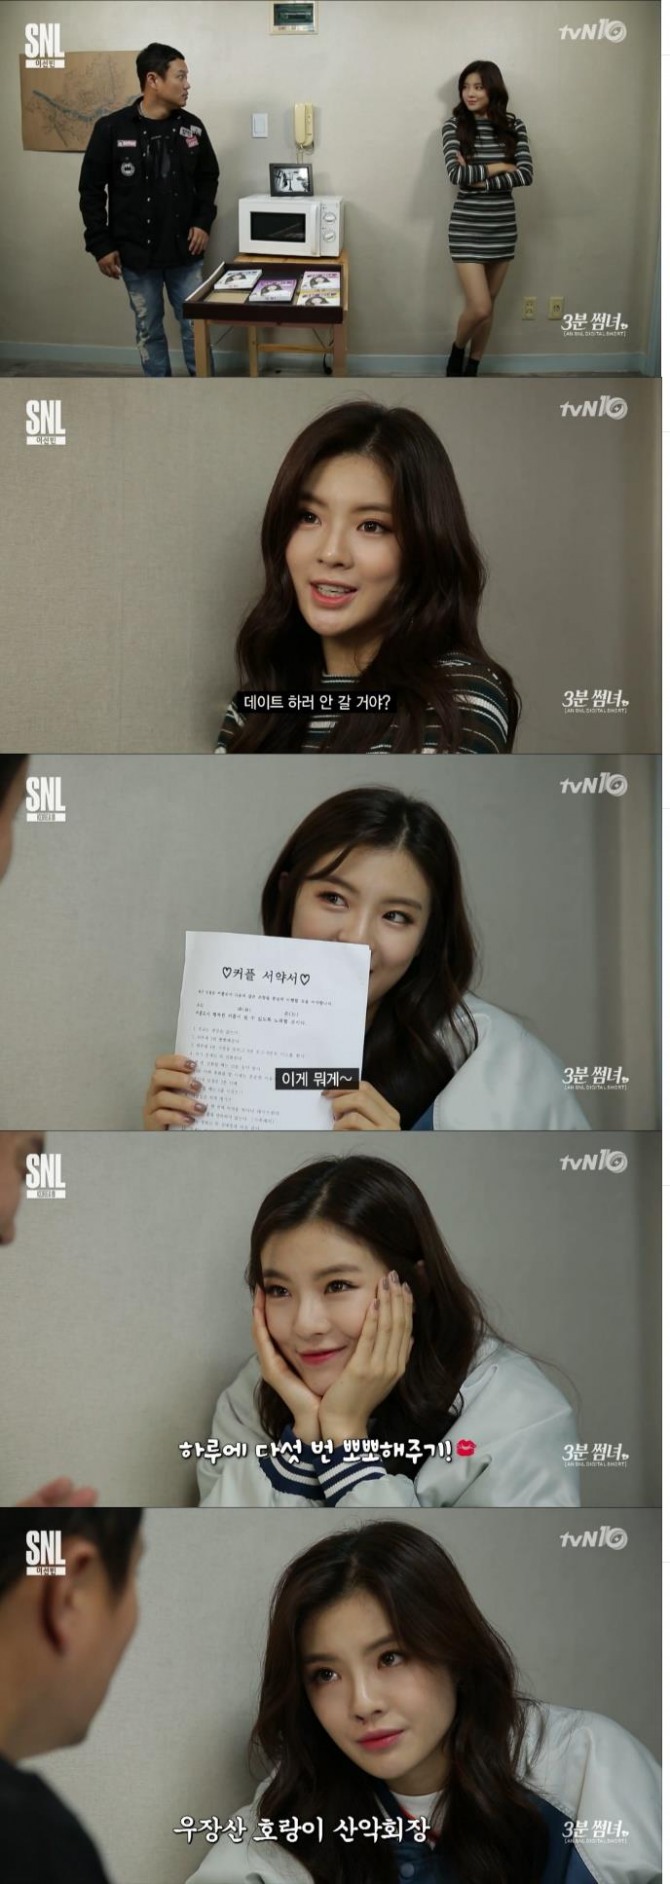 이선빈이 1일 밤 방송된 tvN 'SNL시즌8' 3분썸녀에 등장해 청순미에서 섹시미까지 반전 매력을 보여줬다./사진=tvN 방송 캡처 